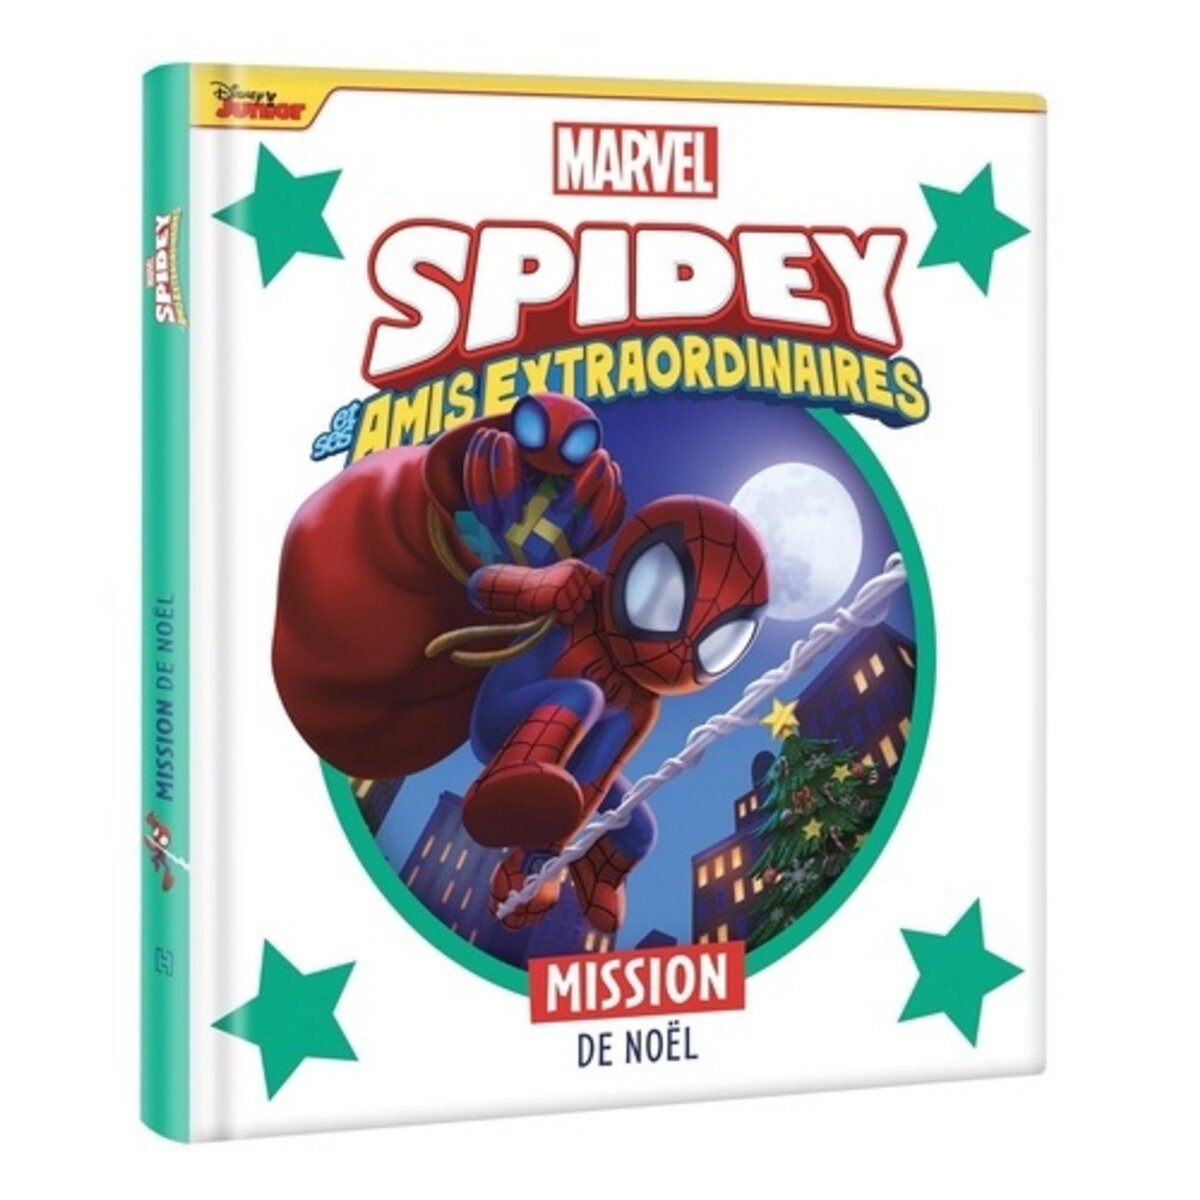 Marvel Spidey et ses amis extraordinaires : mission au musée